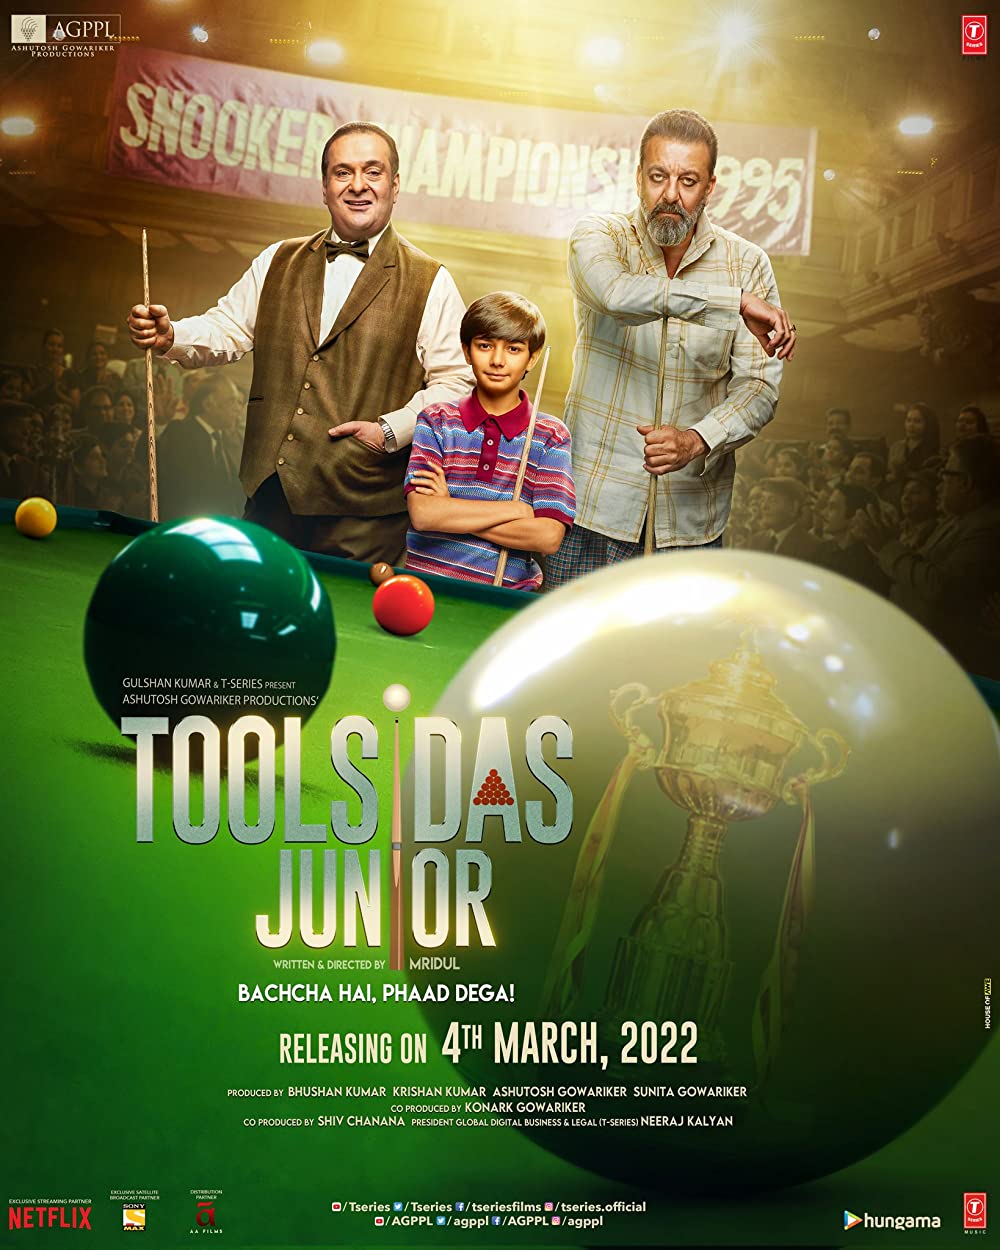 Toolsidas Junior Movie Review | Toolsidas Junior Filmy Rating 2022